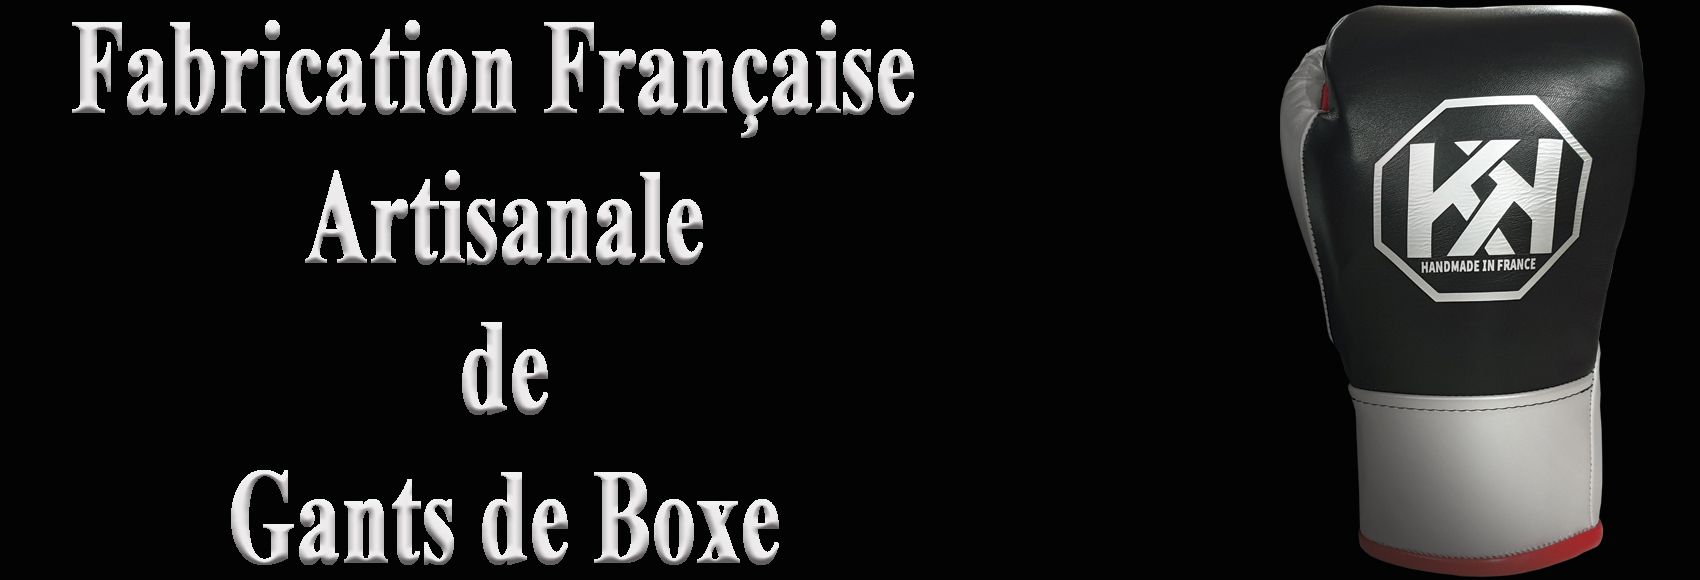 Gants de boxe fabrication française